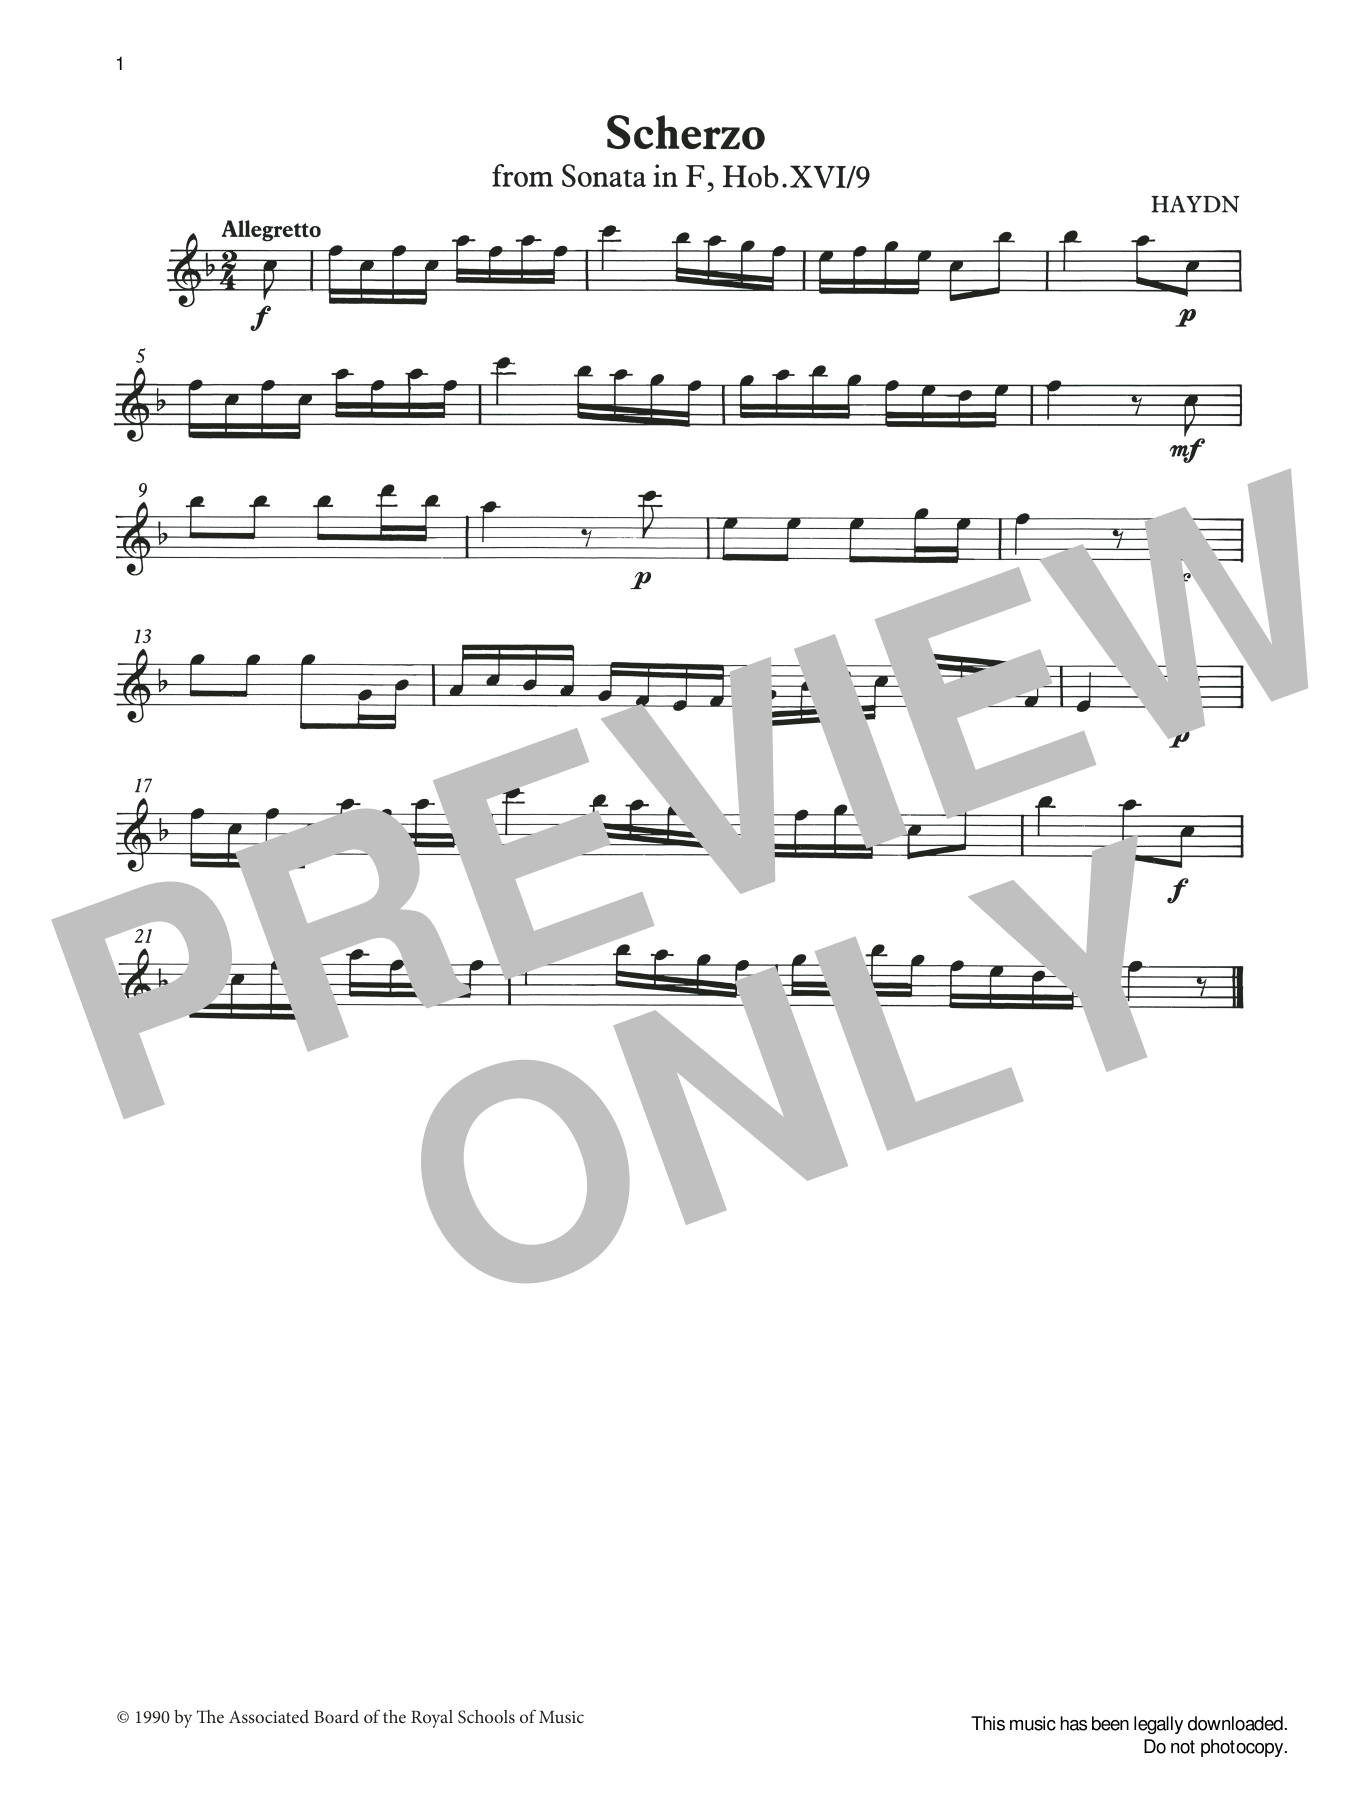 Scherzo (score & part) from Graded Music for Tuned Percussion, Book I (Percussion Solo) von Joseph Haydn